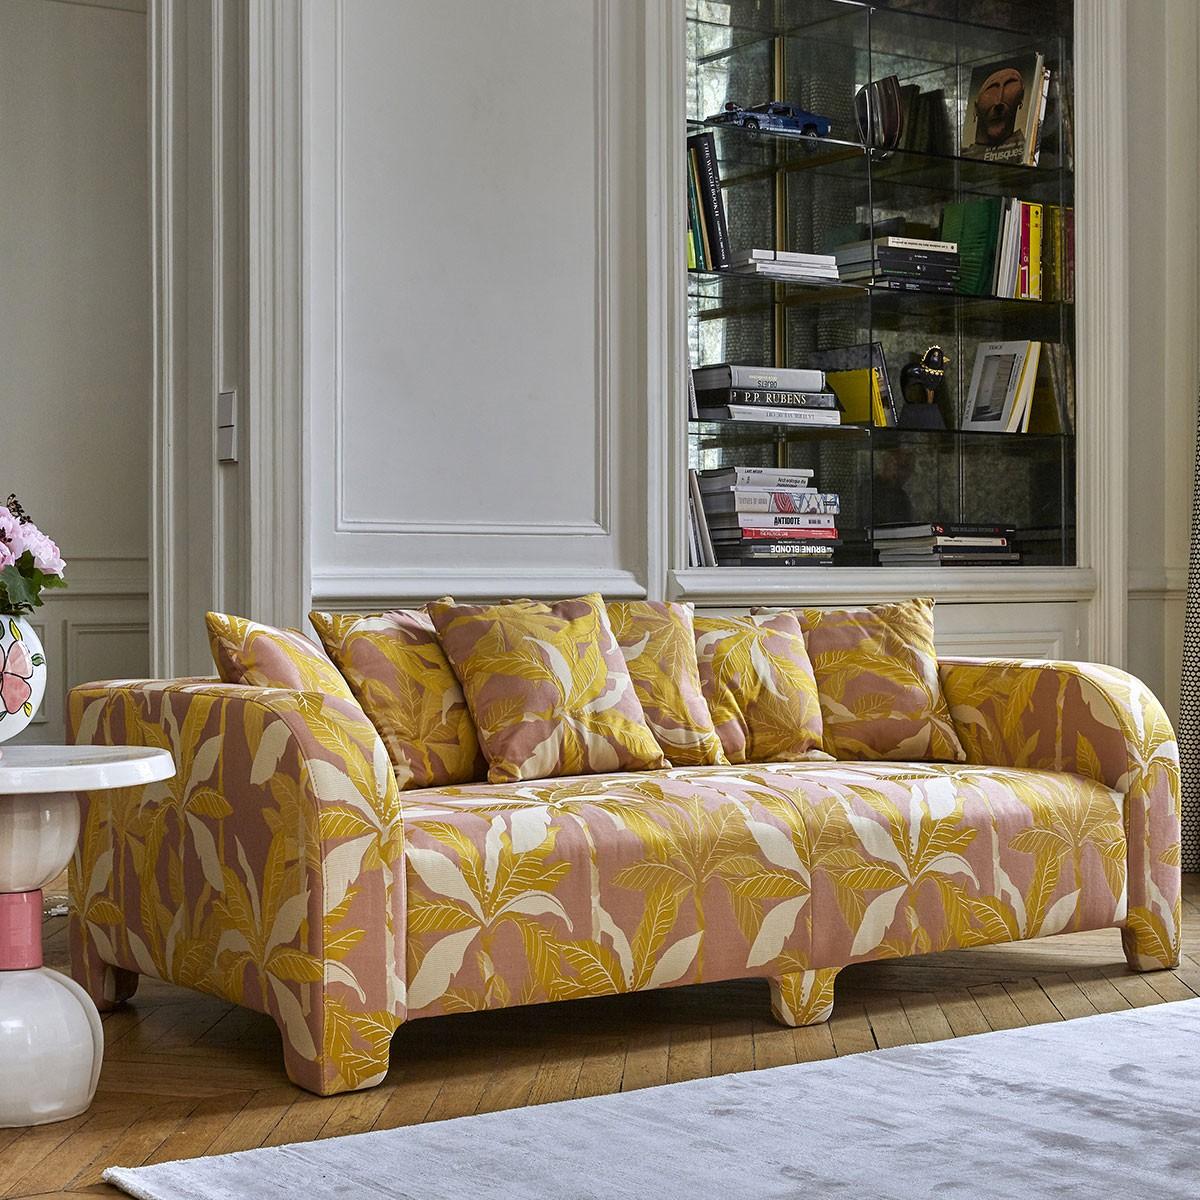 Popus Editions Graziella 4 Seater Sofa in White Venice Chenille Velvet Fabric In New Condition For Sale In Paris, FR